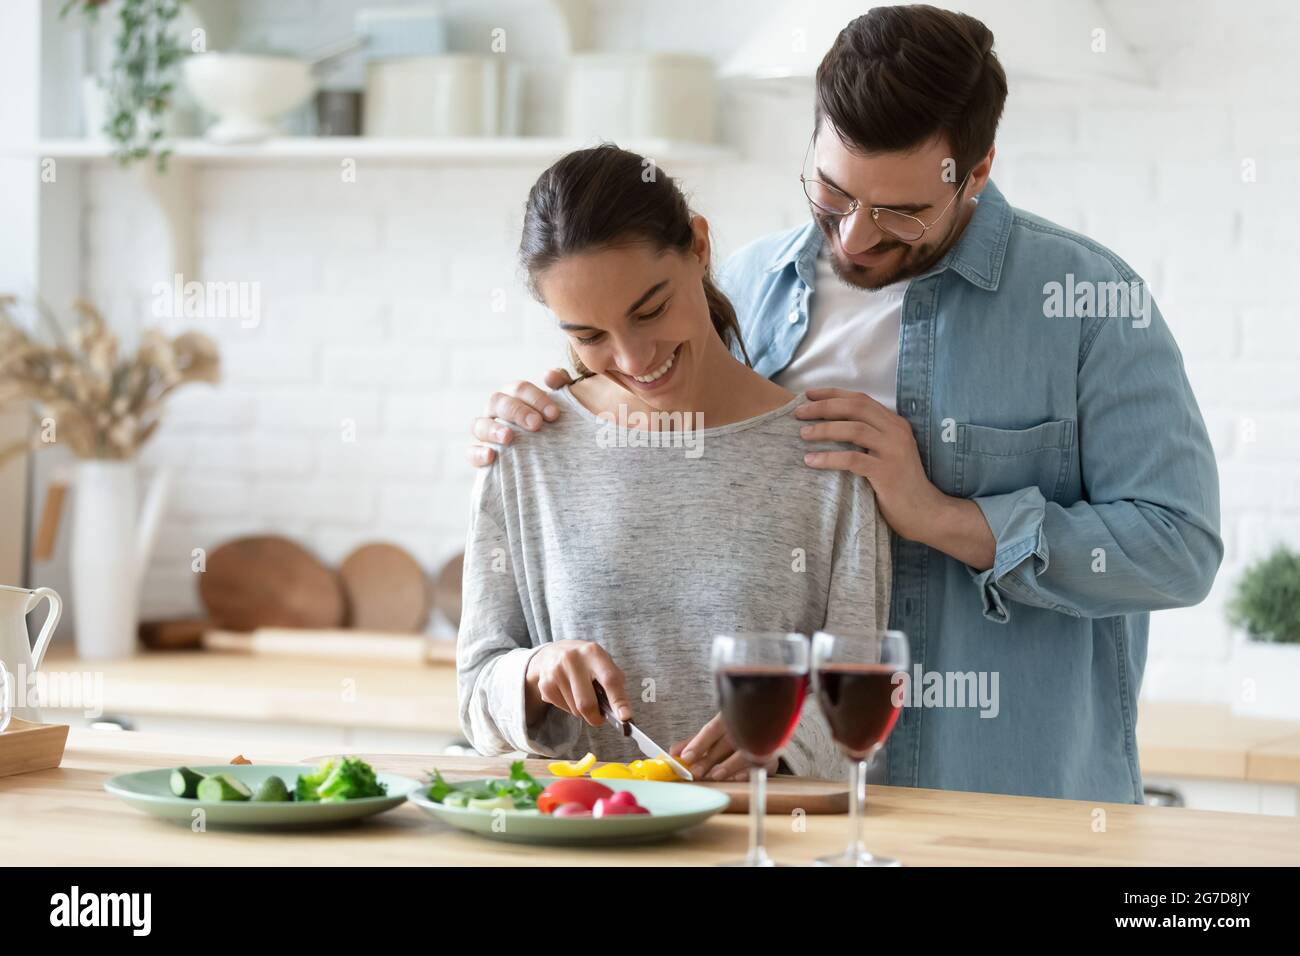 Une petite amie soignante prépare un dîner végétarien sain pour un petit ami Banque D'Images